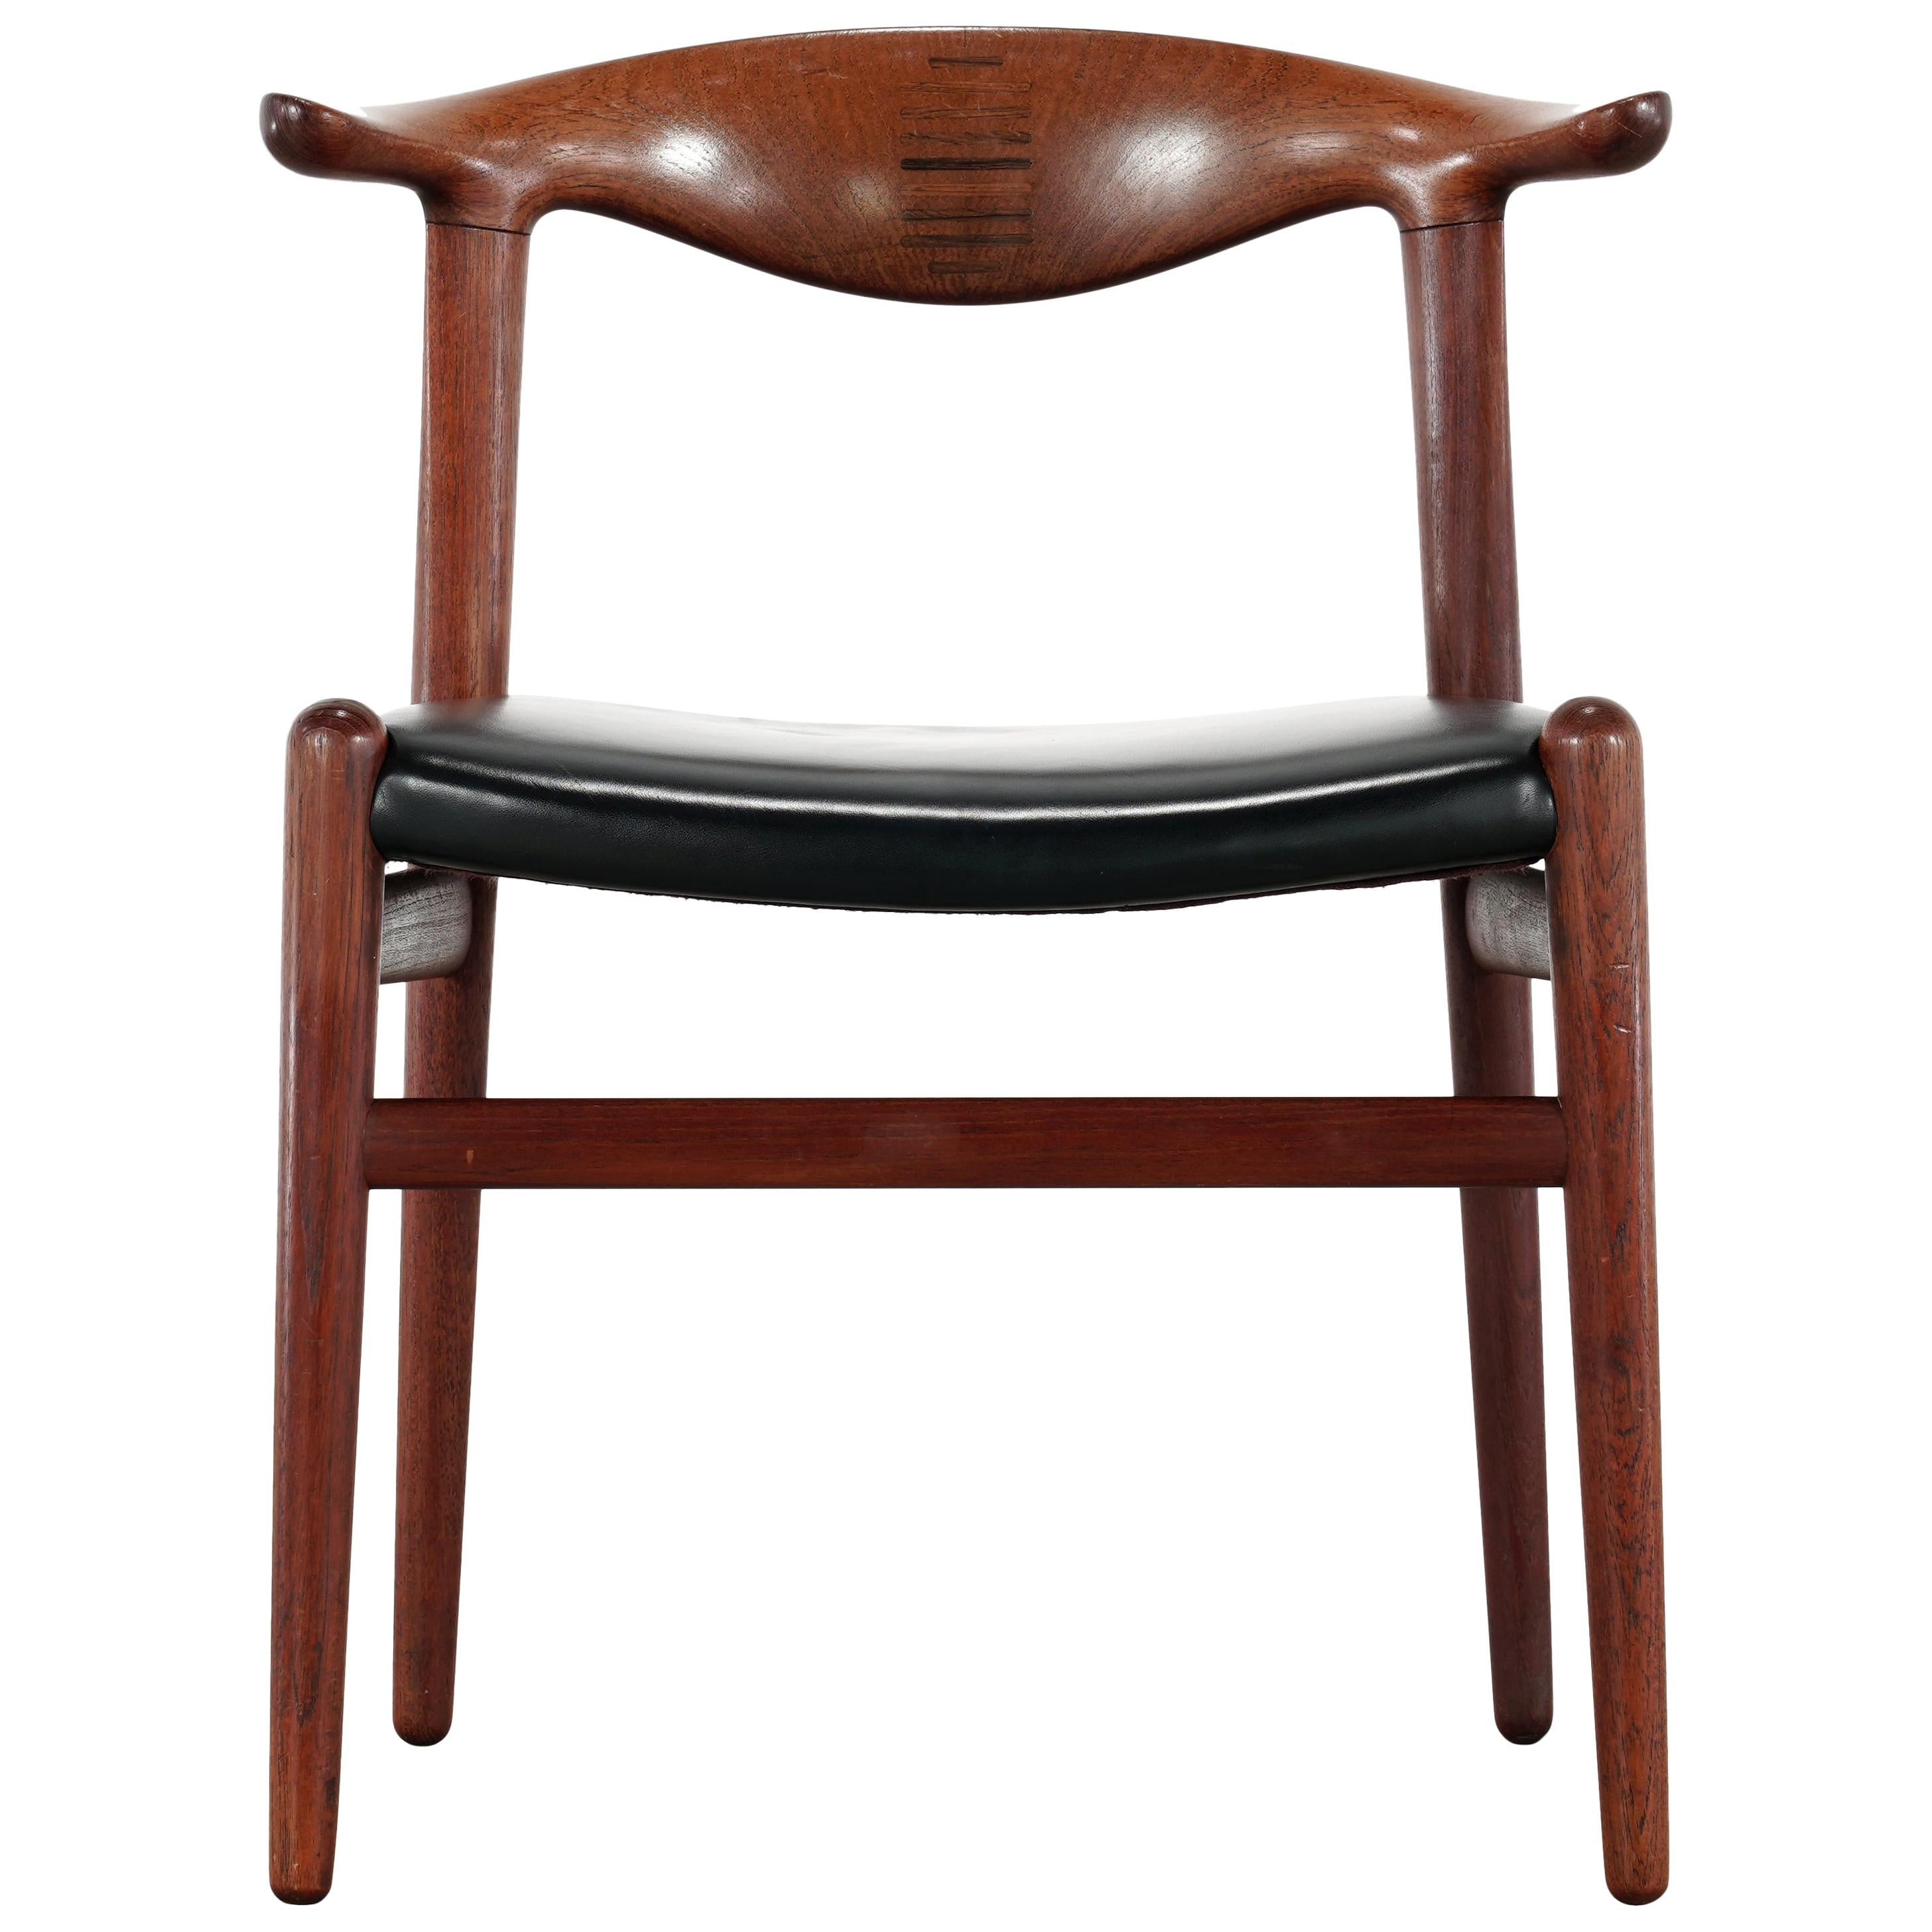 Hans J. Wegner Rare Cowhorn Chair in Teak, 1952 for Johannes Hansen, Denmark